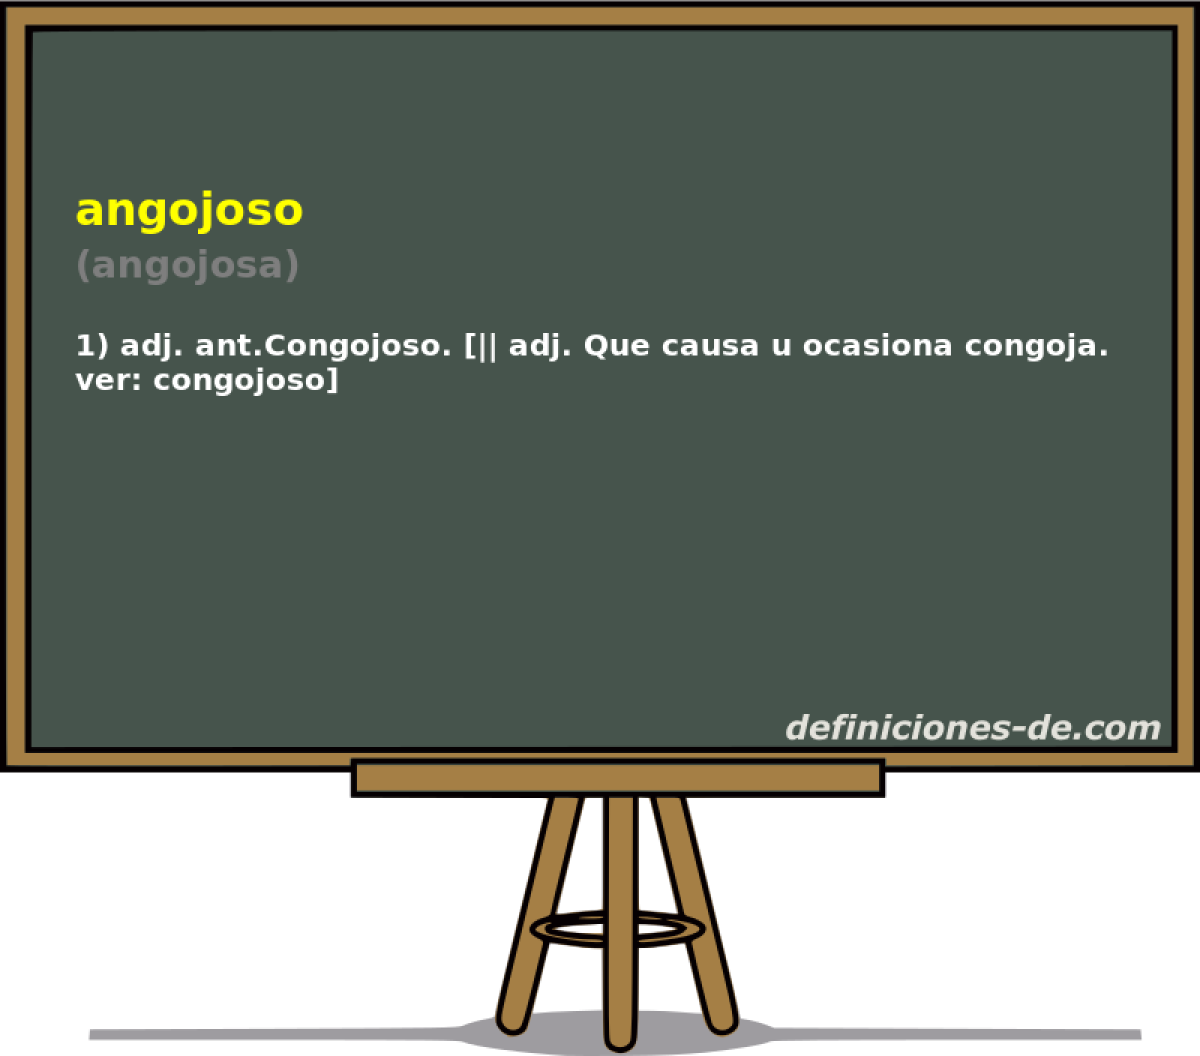 angojoso (angojosa)